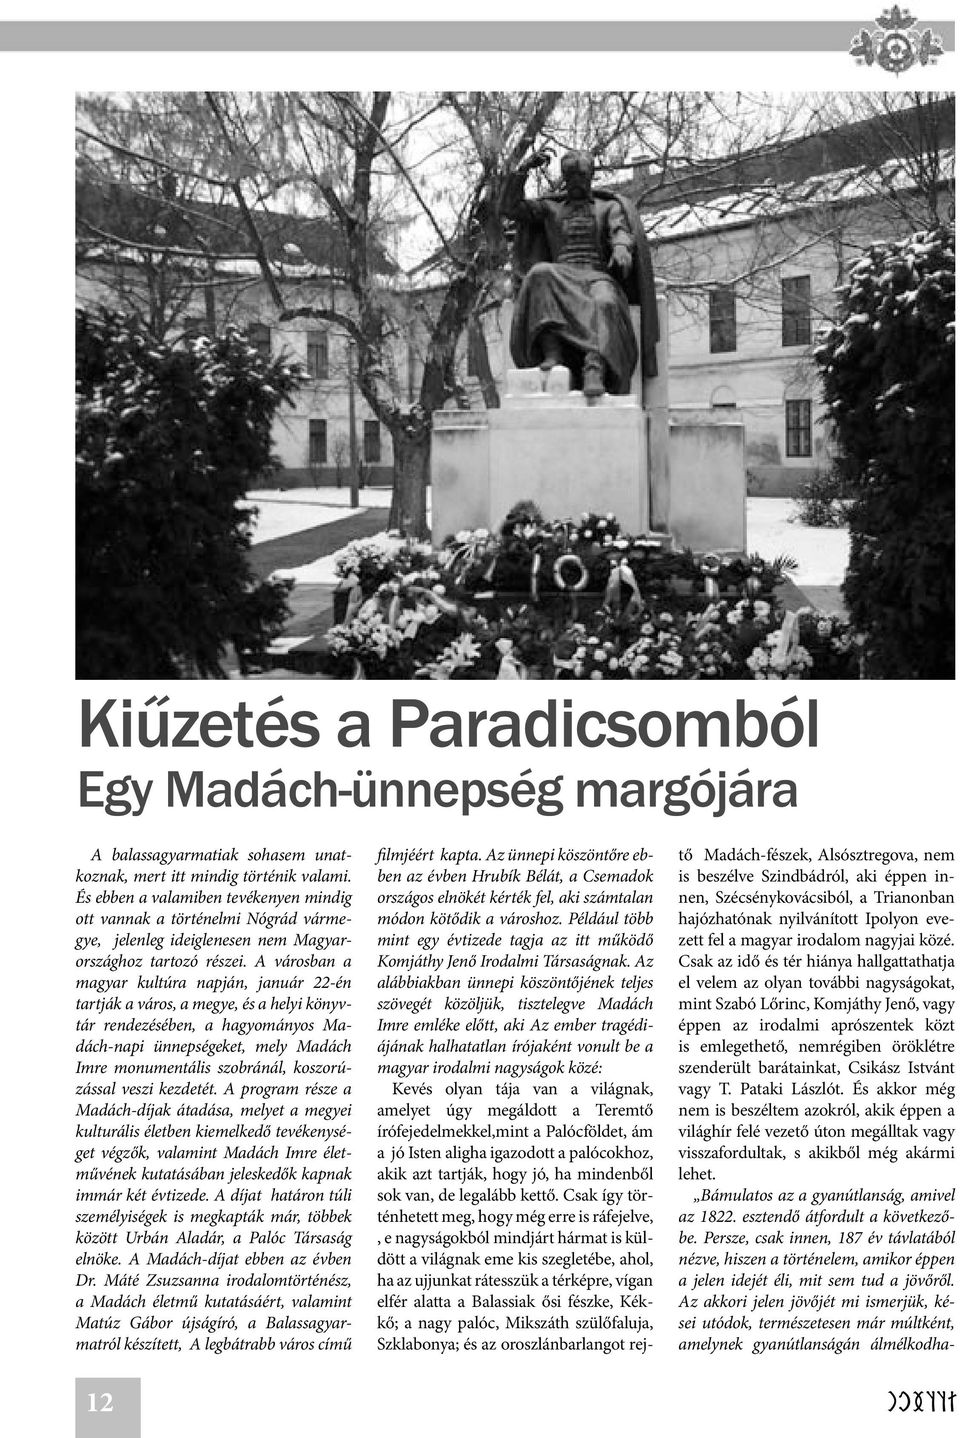 A városban a magyar kultúra napján, január 22-én tartják a város, a megye, és a helyi könyvtár rendezésében, a hagyományos Madách-napi ünnepségeket, mely Madách Imre monumentális szobránál,